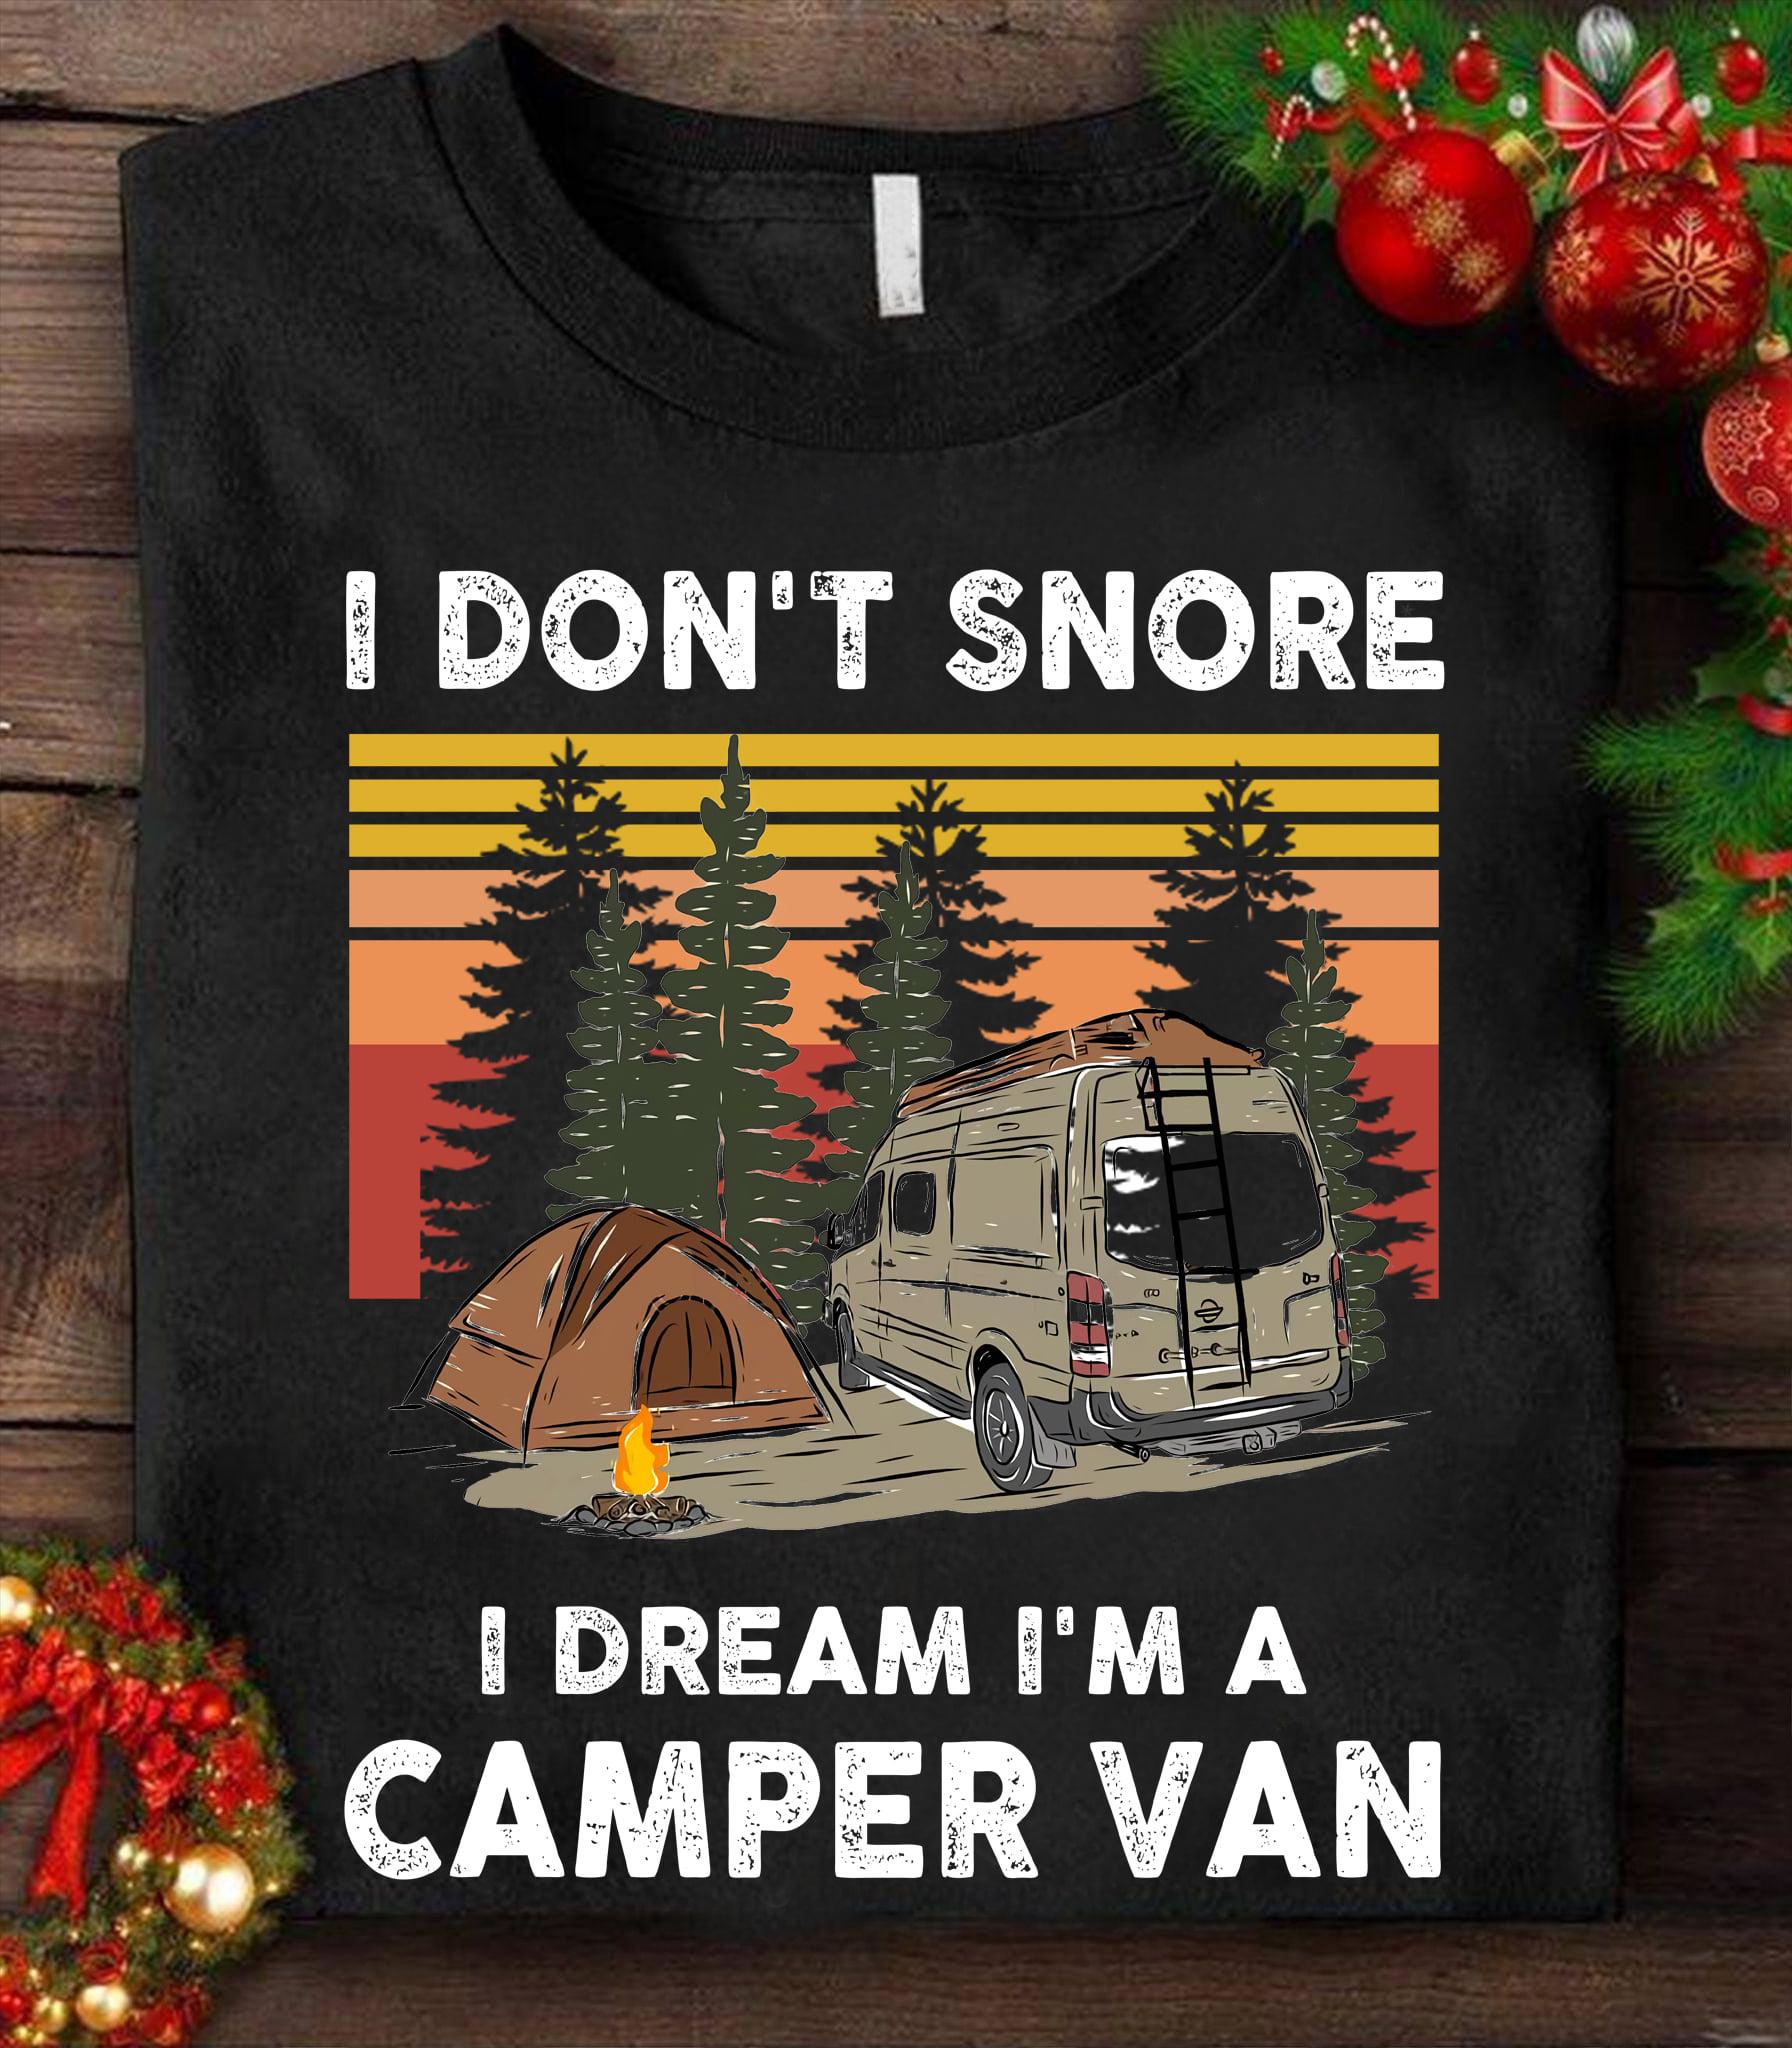 I don't snore I dream I'm a camper van - Camping in the wood, tent and camper van